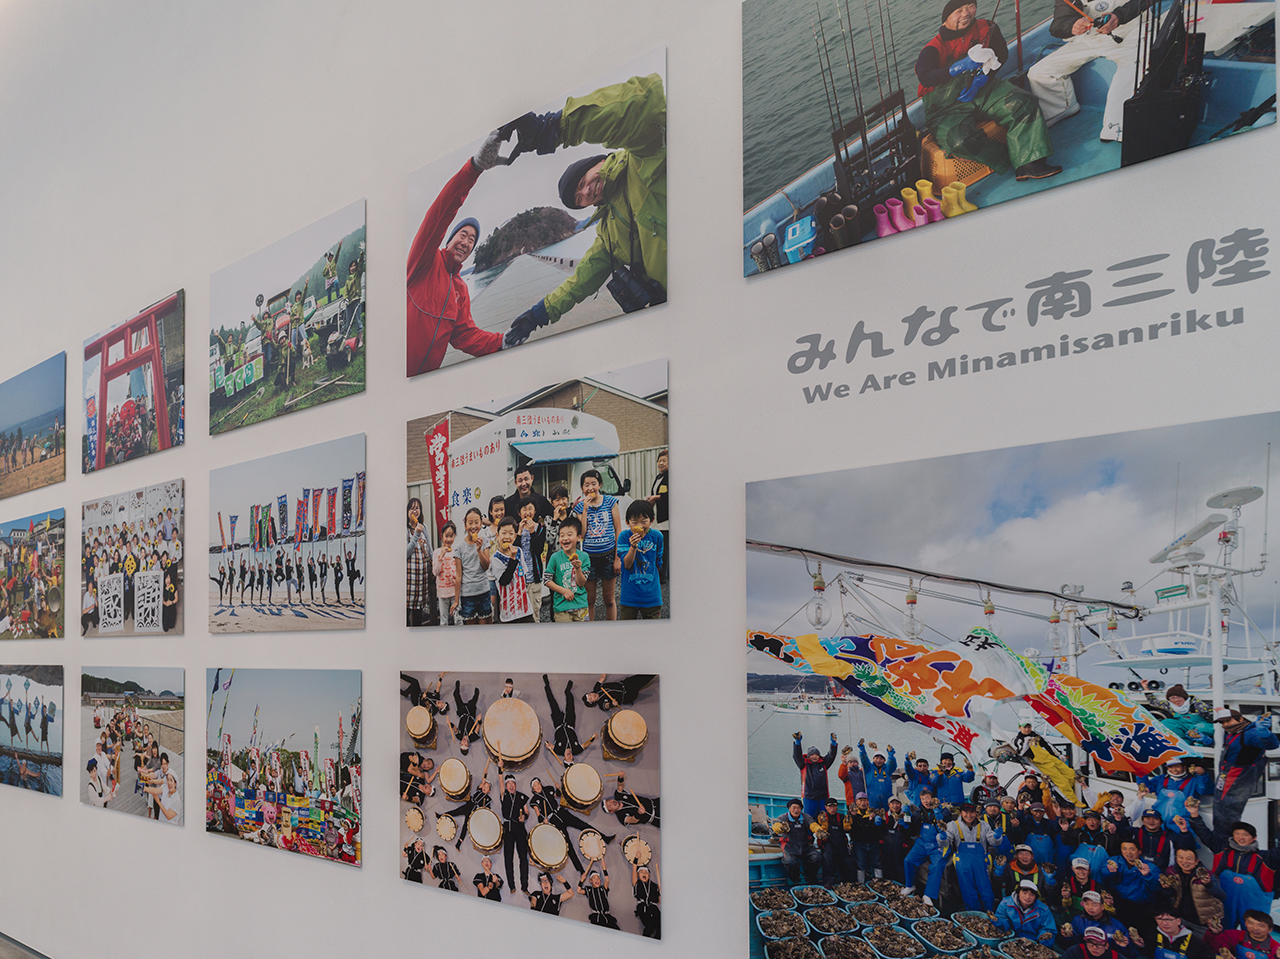 「みんなの広場」に展示されている浅田政志の写真「みんなで南三陸」